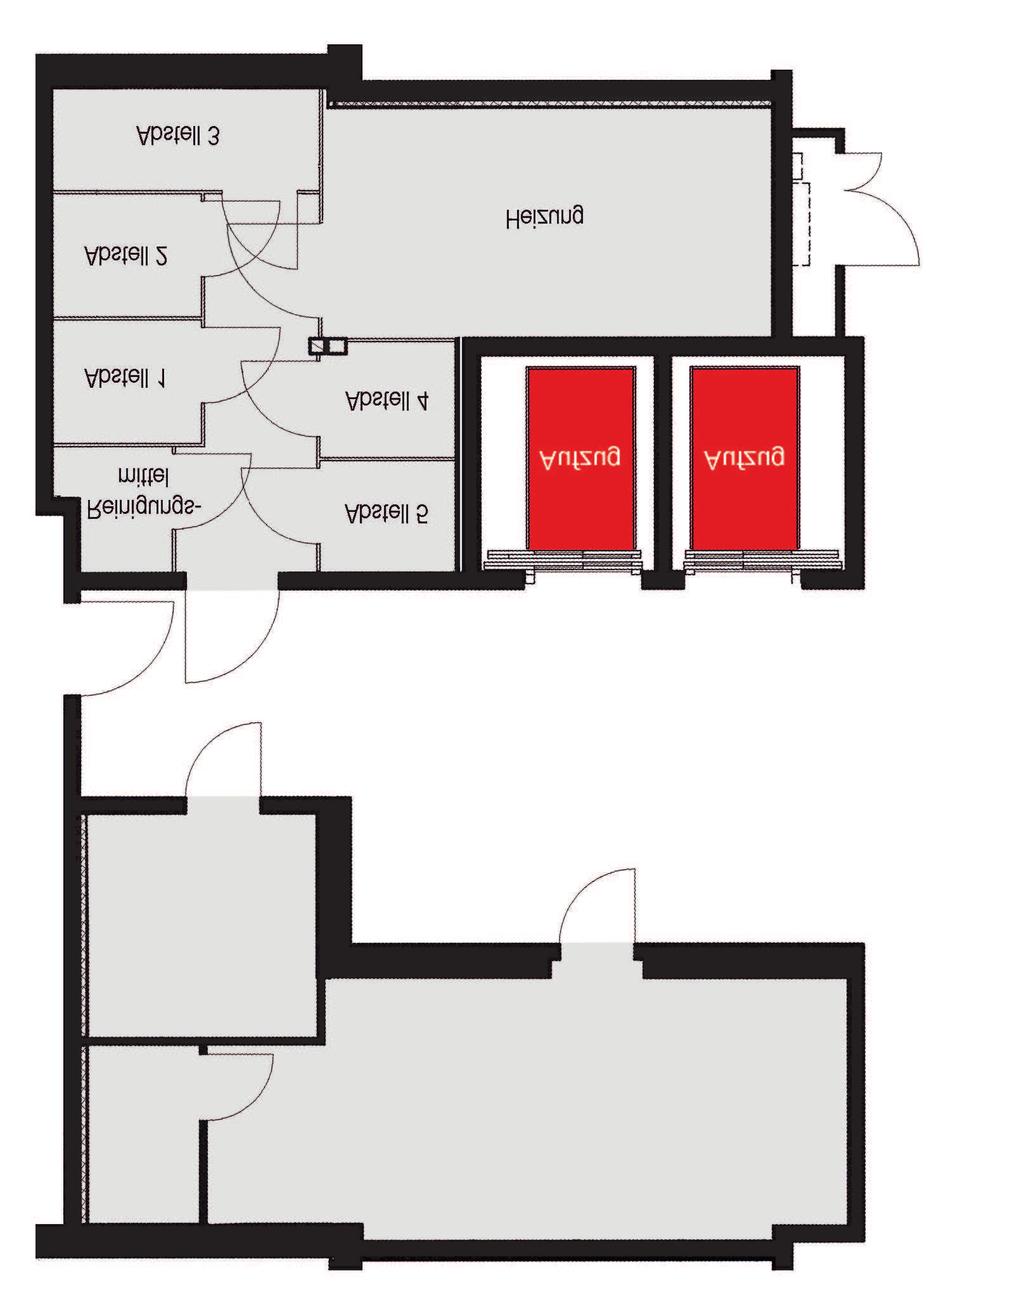 Gemeinschaftsflächen 1. OBERGESCHOSS Abstellräume Abstell 1 ca. 3,29 m² Abstell 2 ca. 3,29 m² Abstell 3 ca. 4,90 m² Abstell 4 ca. 2,64 m² Abstell 5 ca.